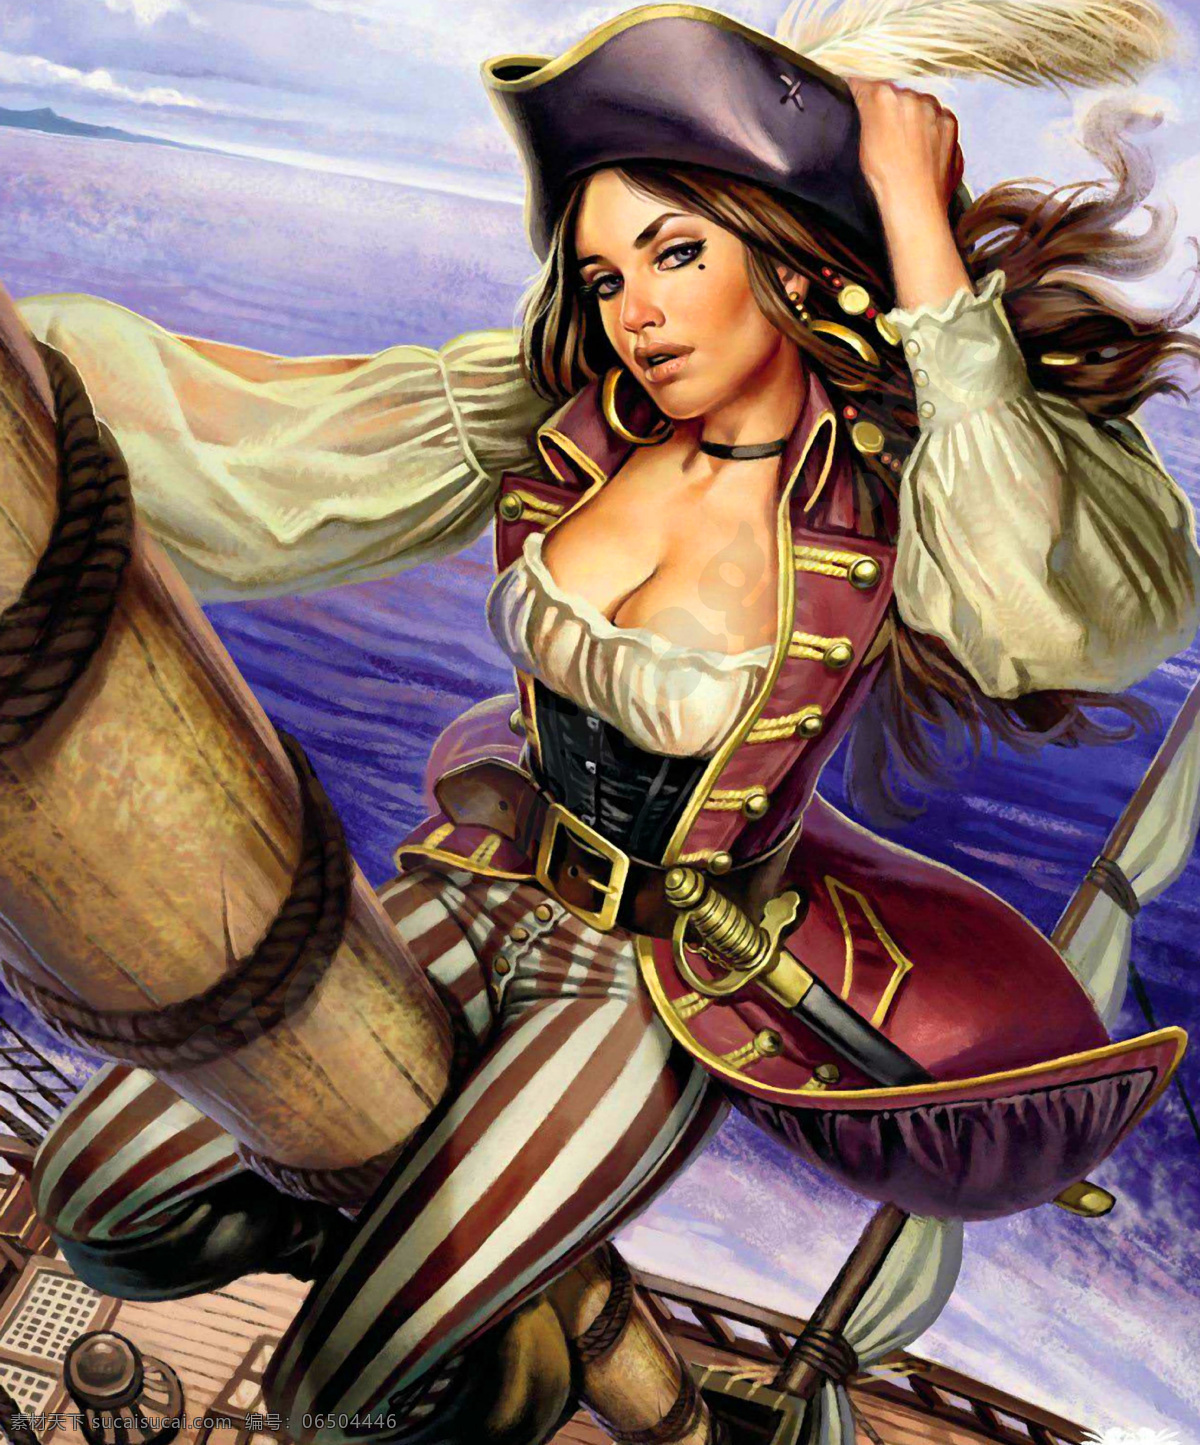 女海盗 海盗 传说 童话 出海 桅杆 女子 女人 性感 人体 绘本 手绘 艺术 油画 趣味 绘画 插图 装饰画 无框画 美女 人物 动漫人物 动漫动画